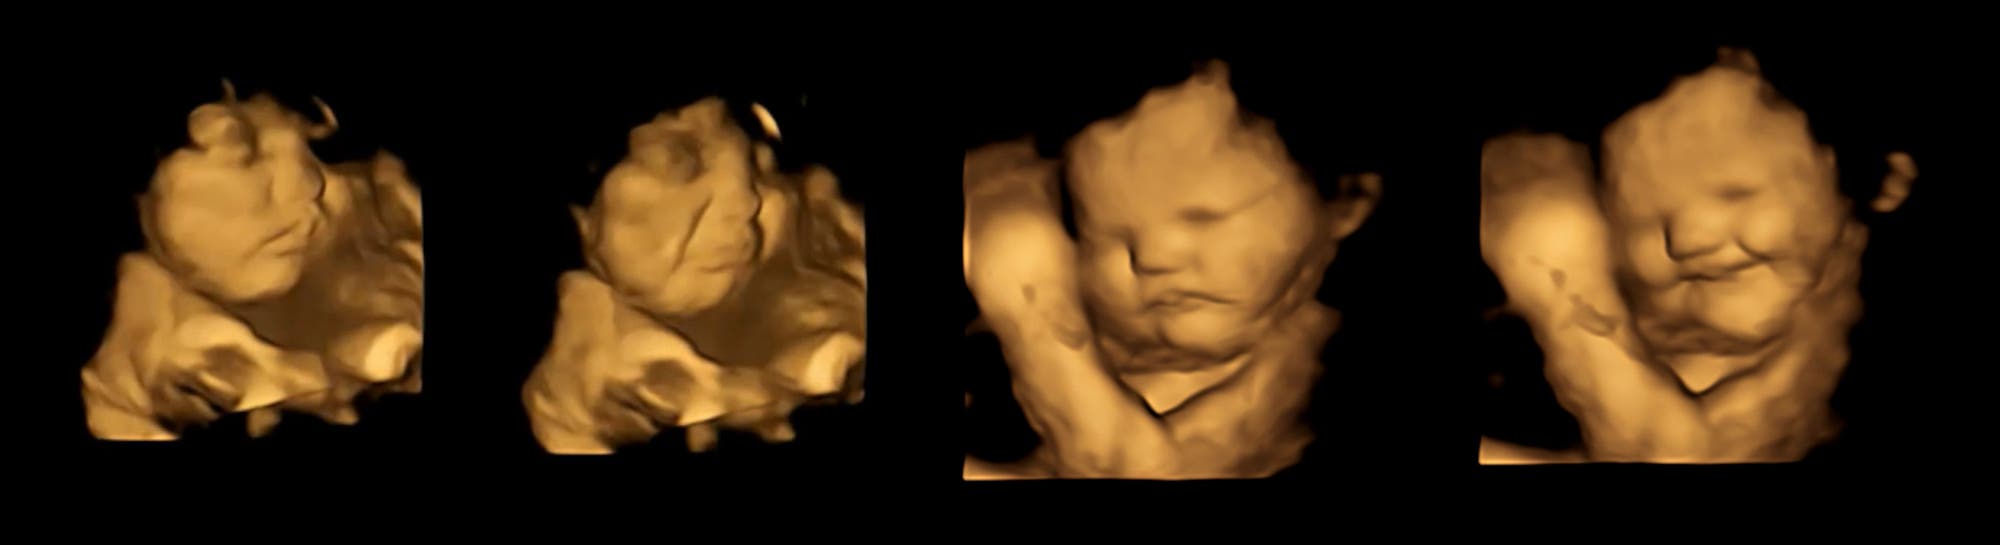 Dreidimensionales Ultraschallbilder von Föten mit unterschiedlichen Gesichtsausdrücken.